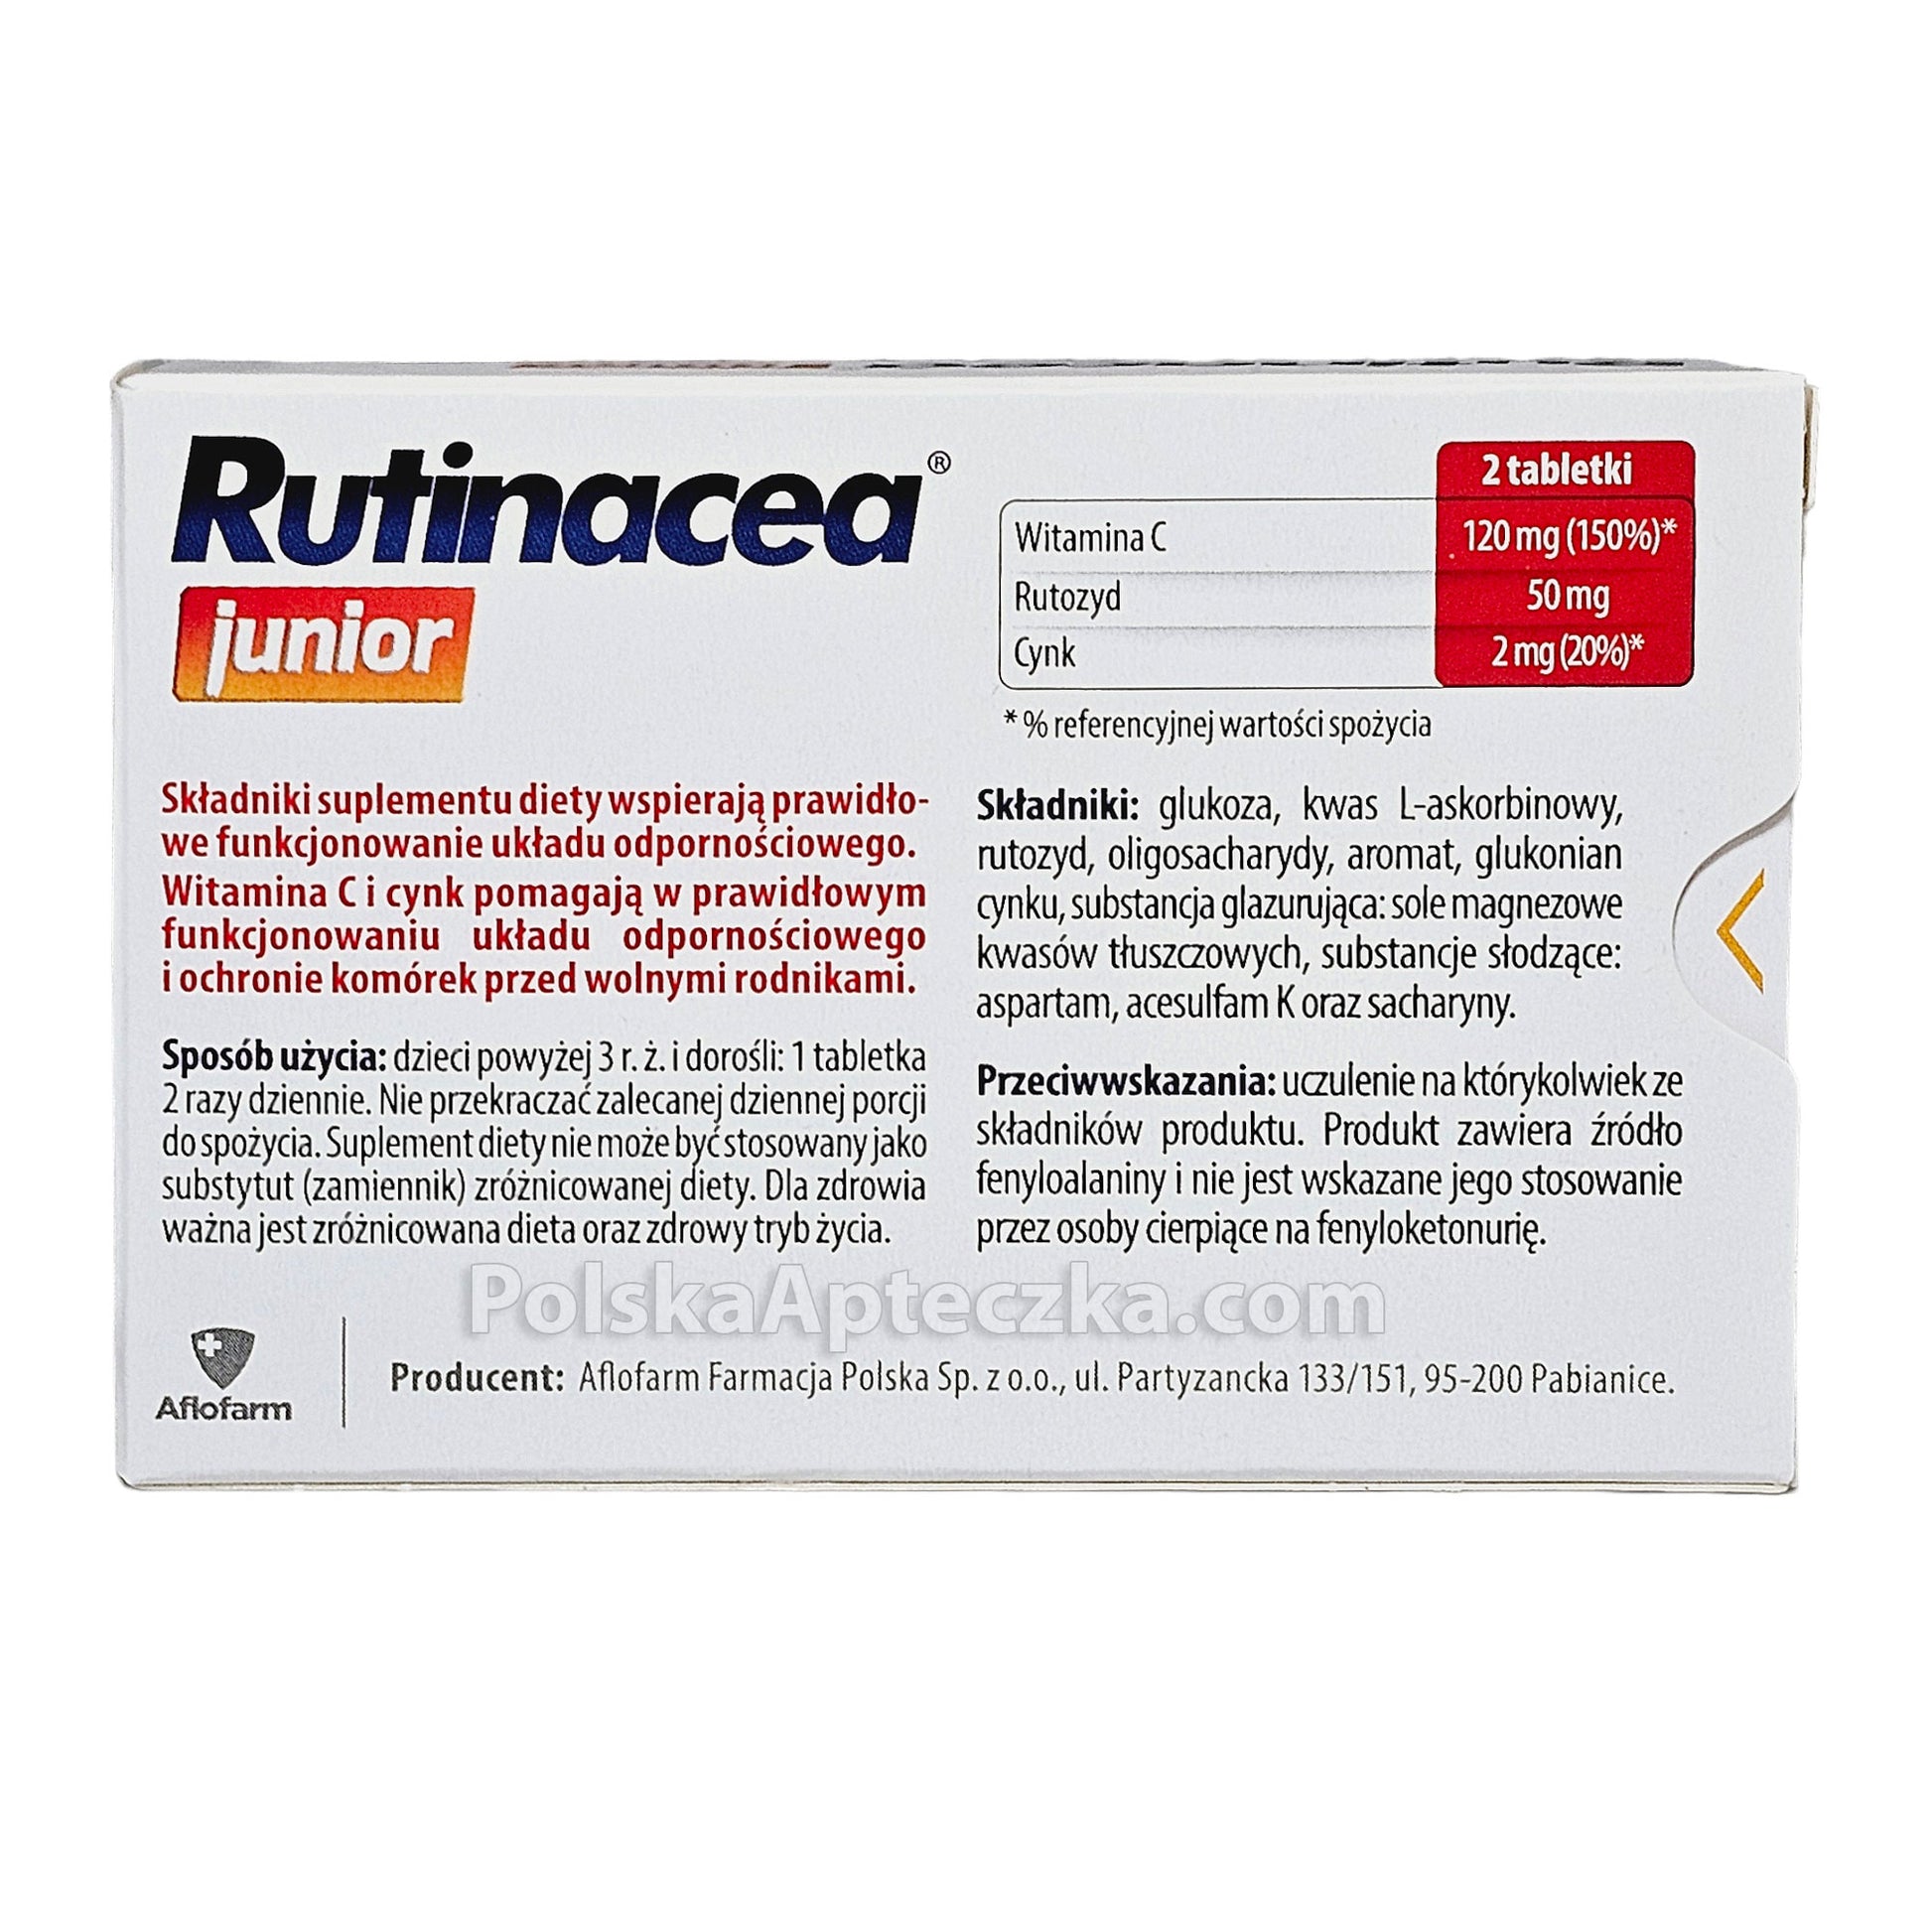 rutinacea junior tabletki